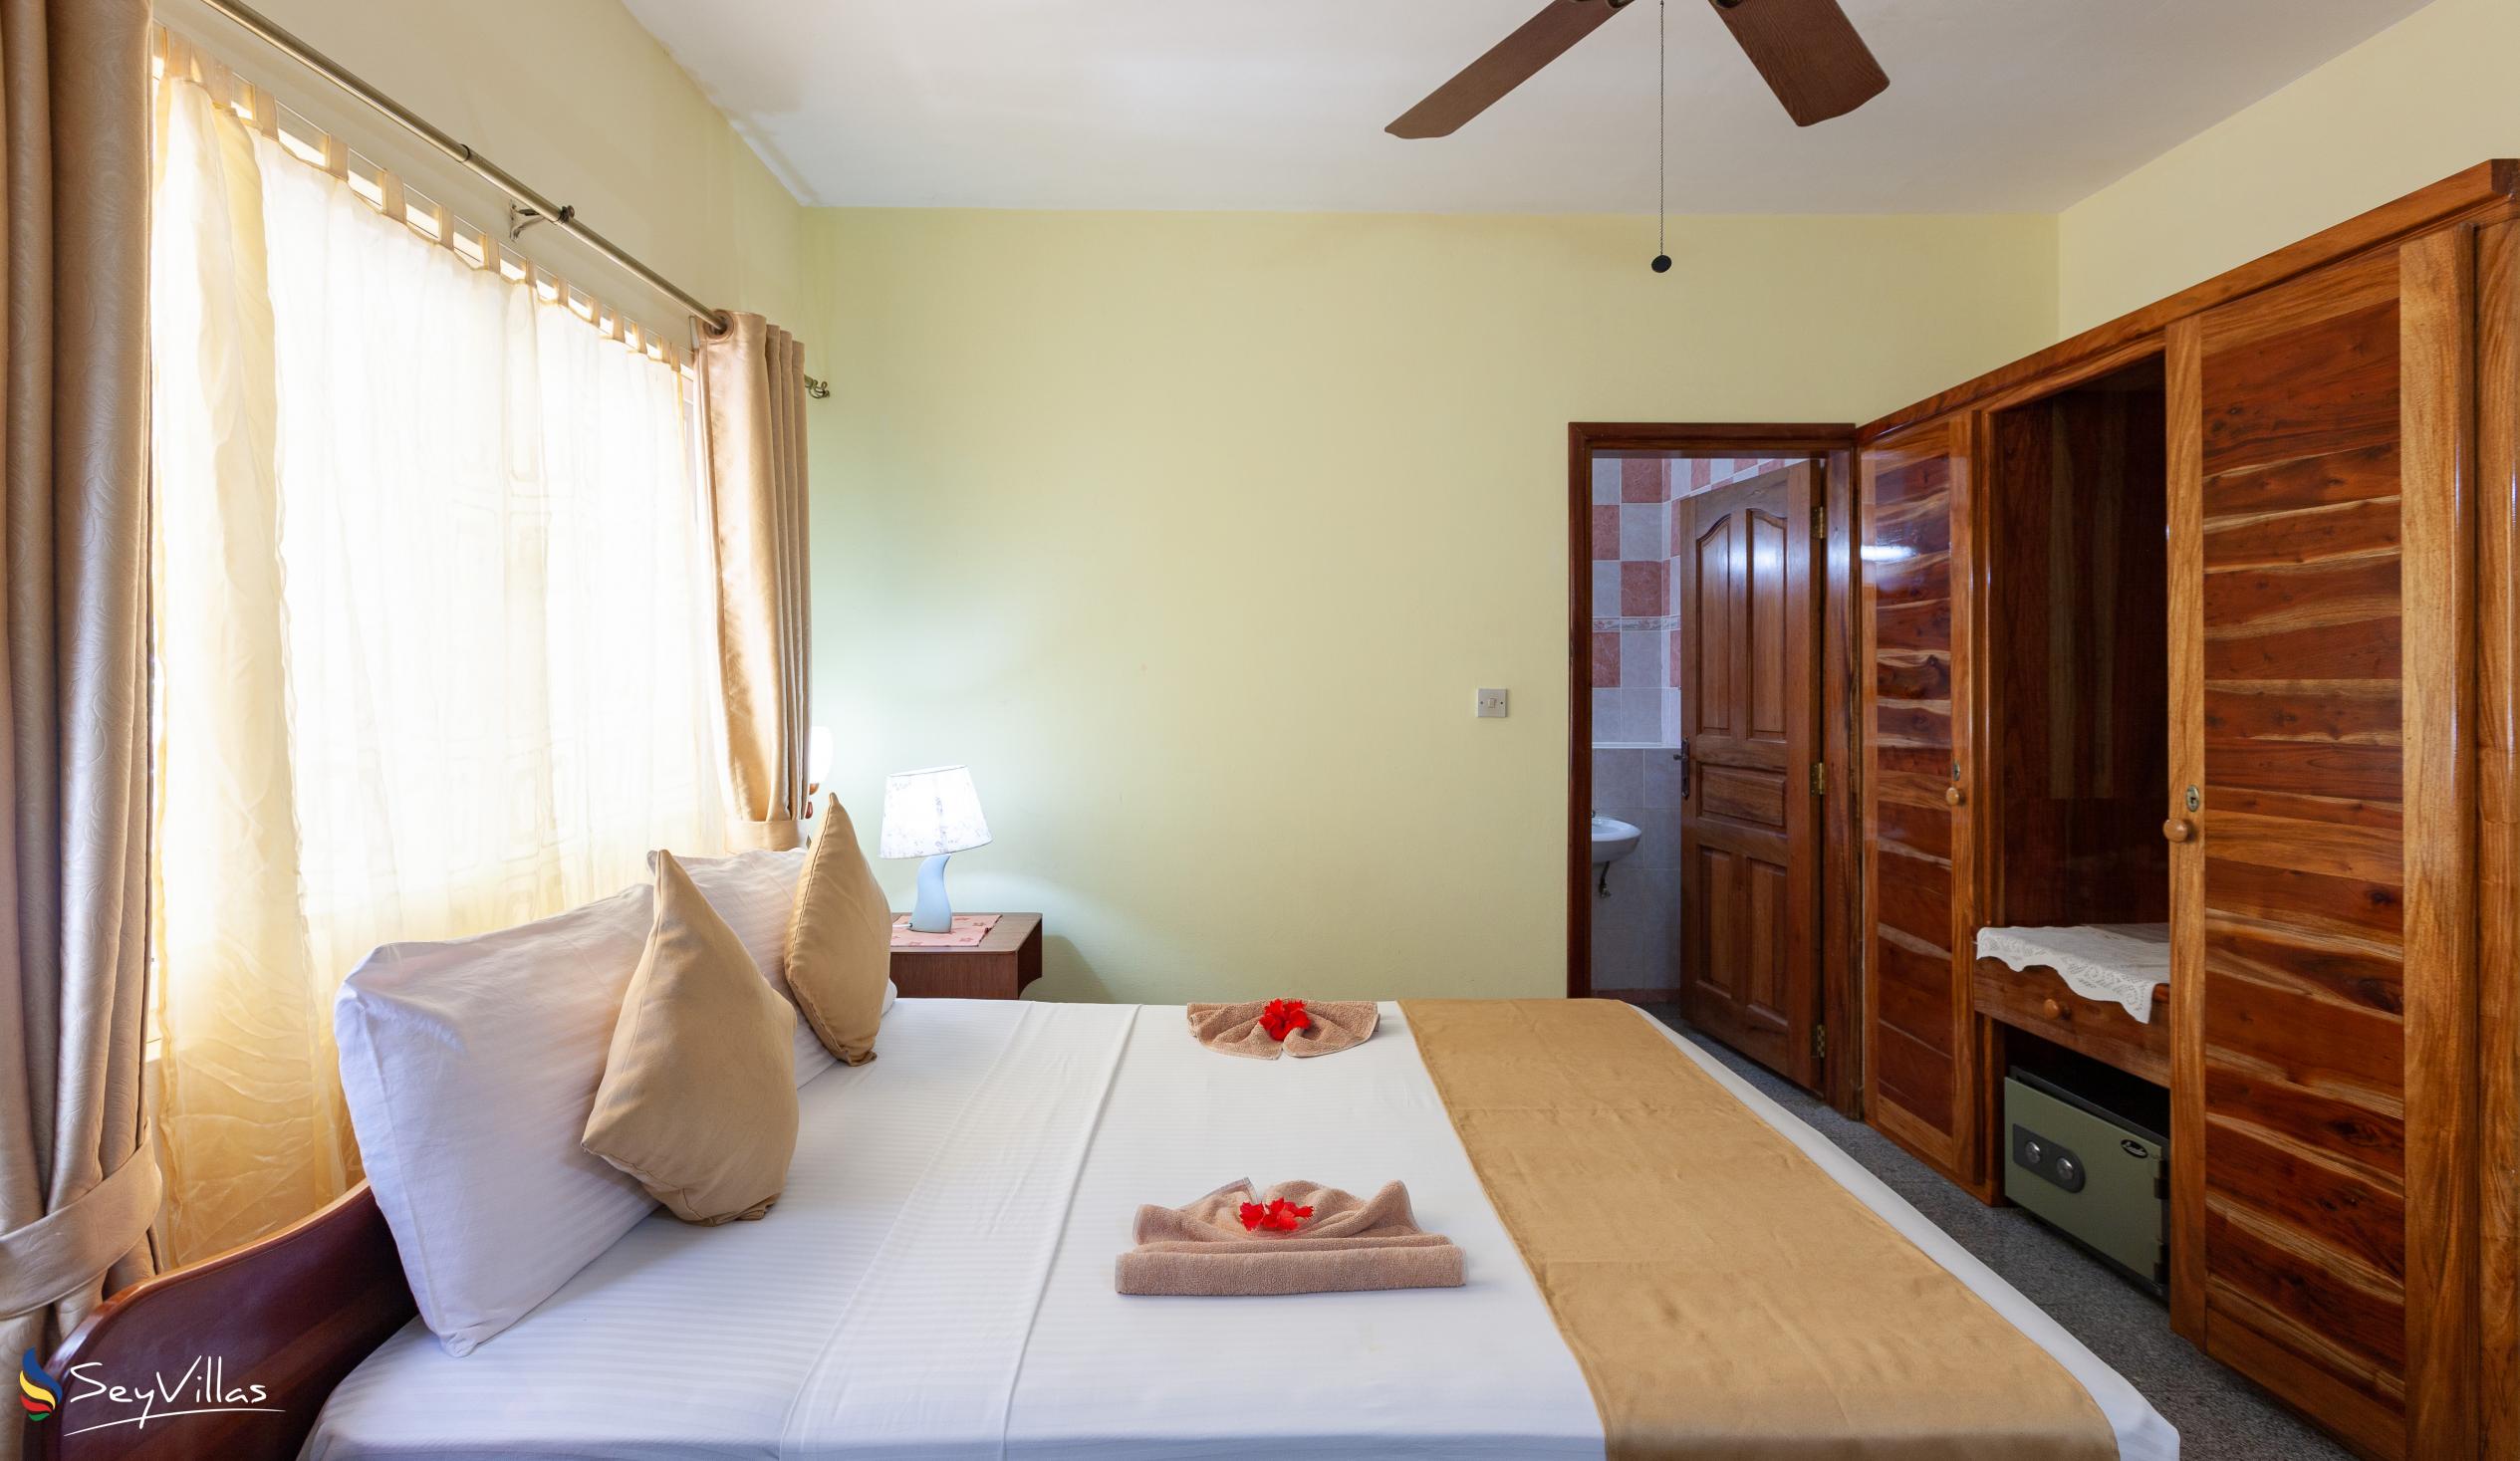 Photo 88: Villa Bananier - Standard Room - Praslin (Seychelles)